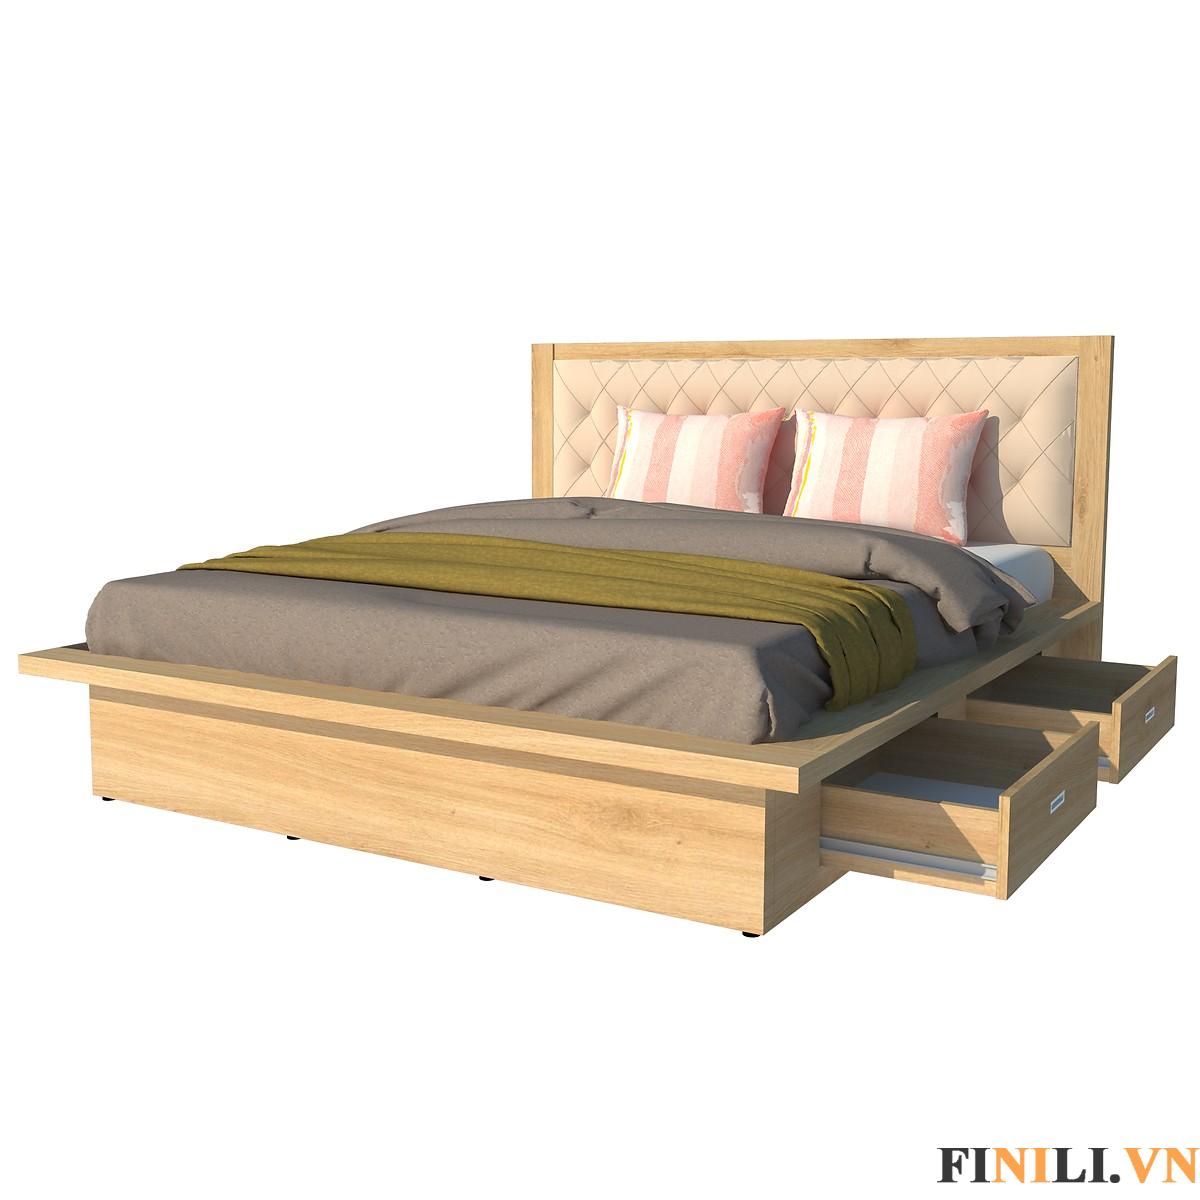 Giường ngủ FNL 0011 đảm bảo được độ bền, có khả năng chống mối mọt cao